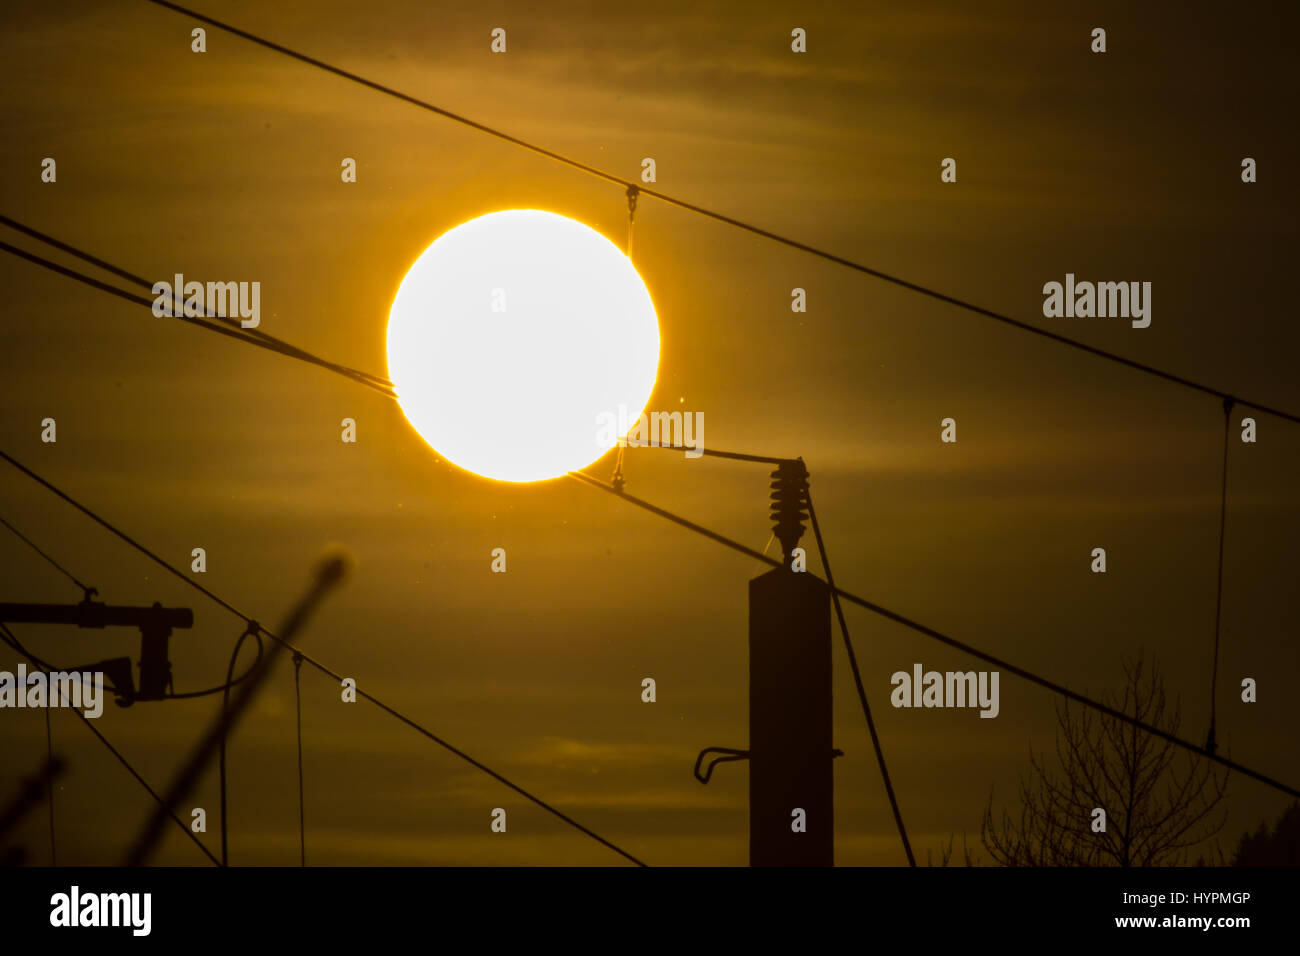 Eine Silhouette von Hochspannungsleitungen vor einem dramatischen und bunten Himmel bei Sonnenaufgang. Stockfoto